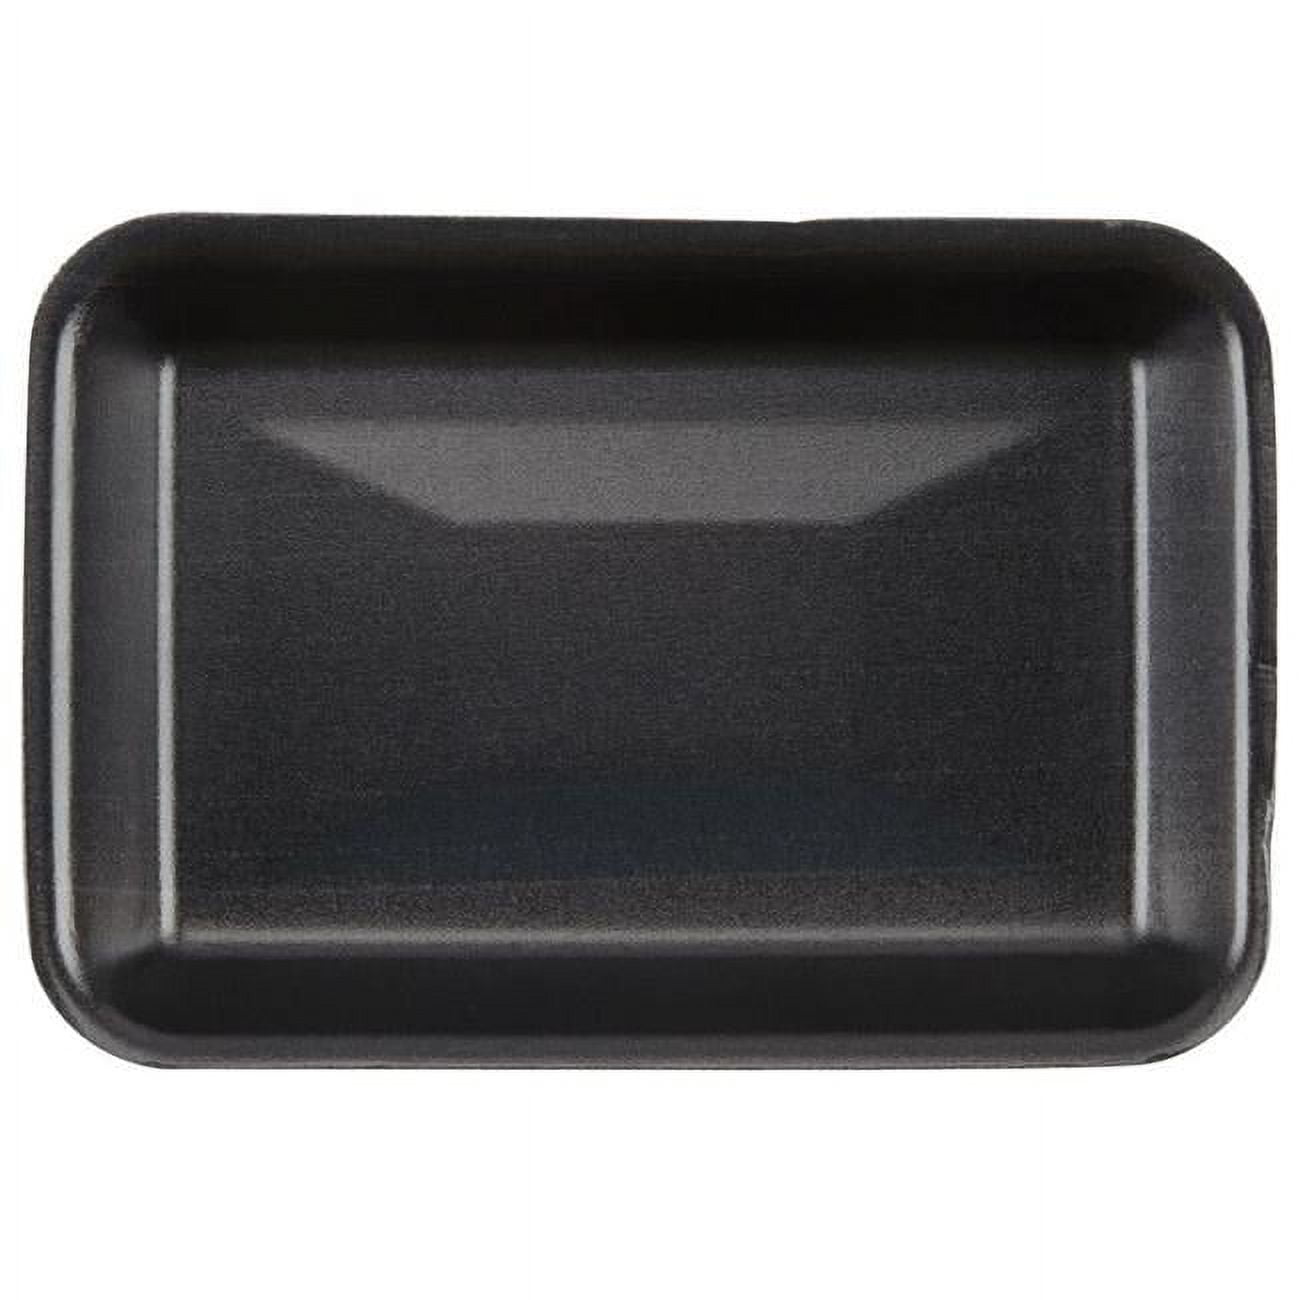 201002sn00 Cpc Foam Tray, Black - Case Of 500